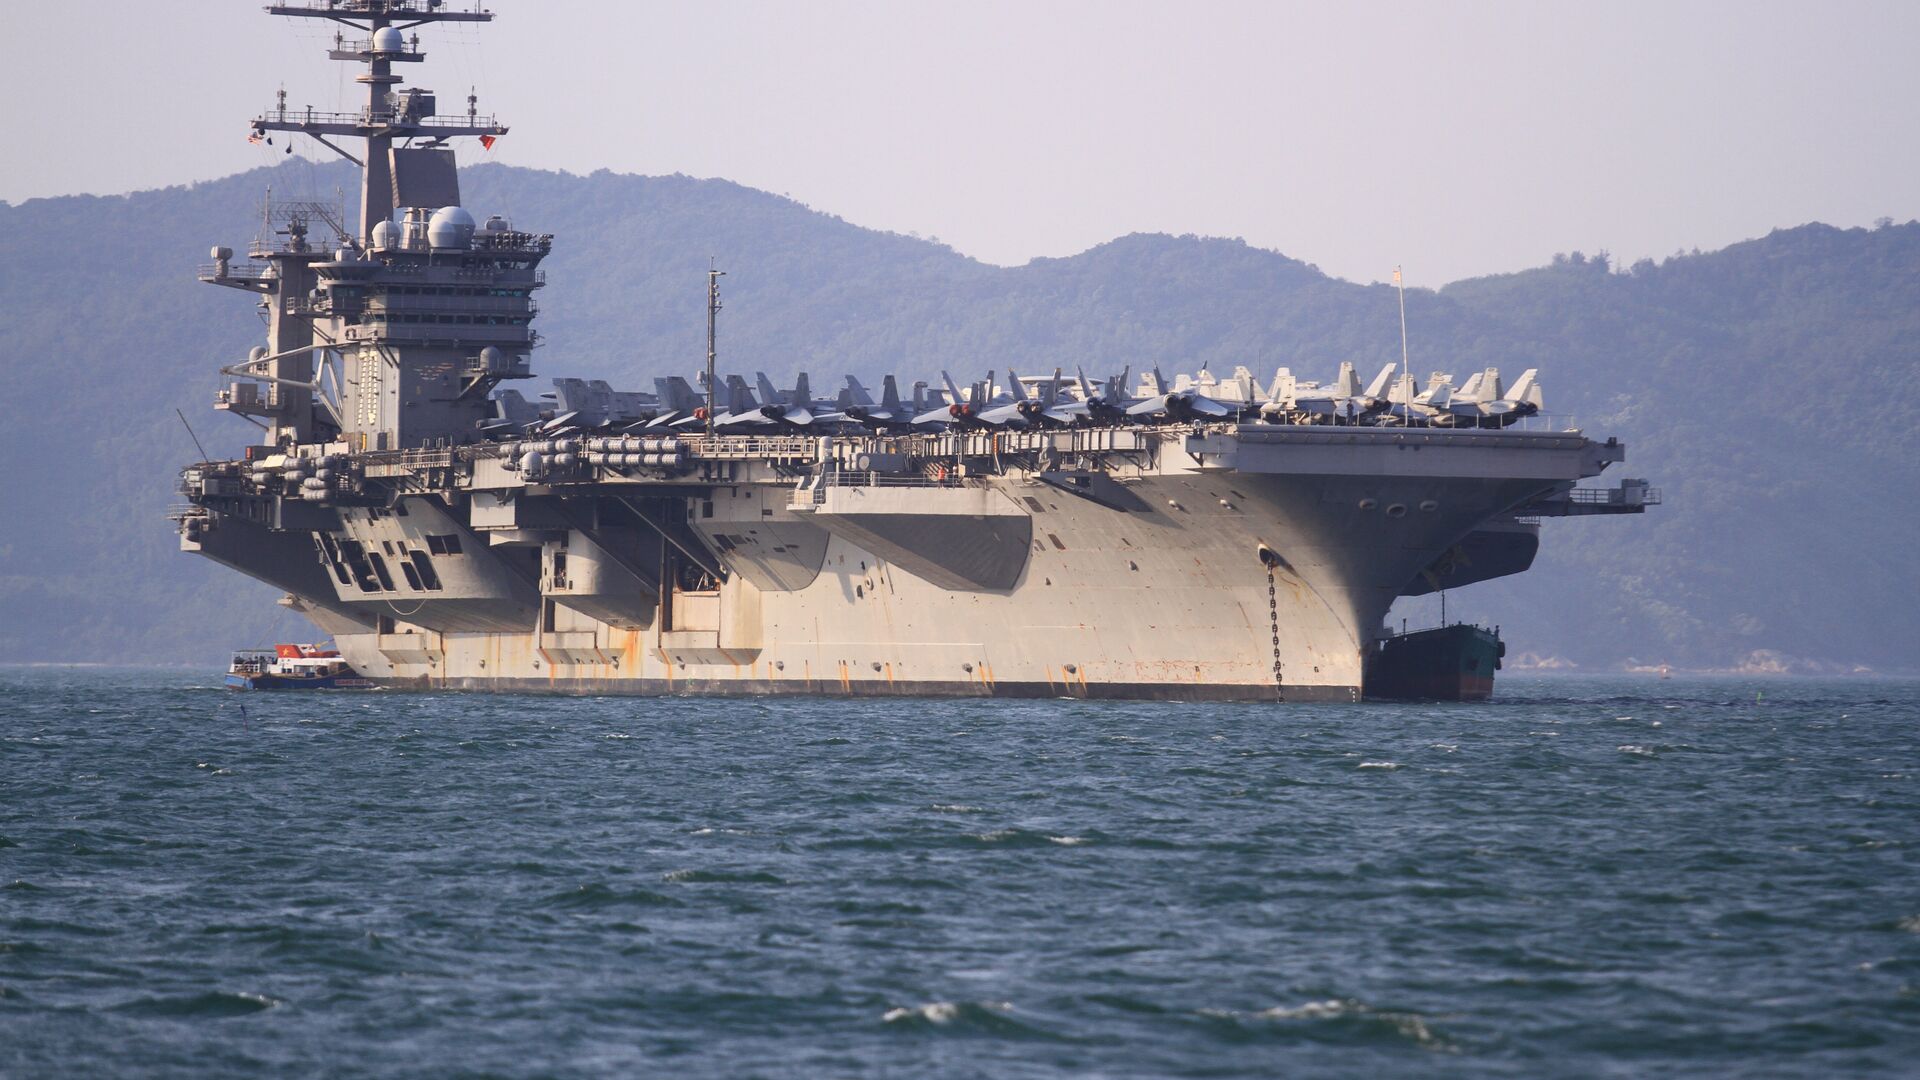 البحرية الأمريكية تعلن مقتل 2 من أفرادها فقدا في مداهمة لسفينة إيرانية بخليج عدن